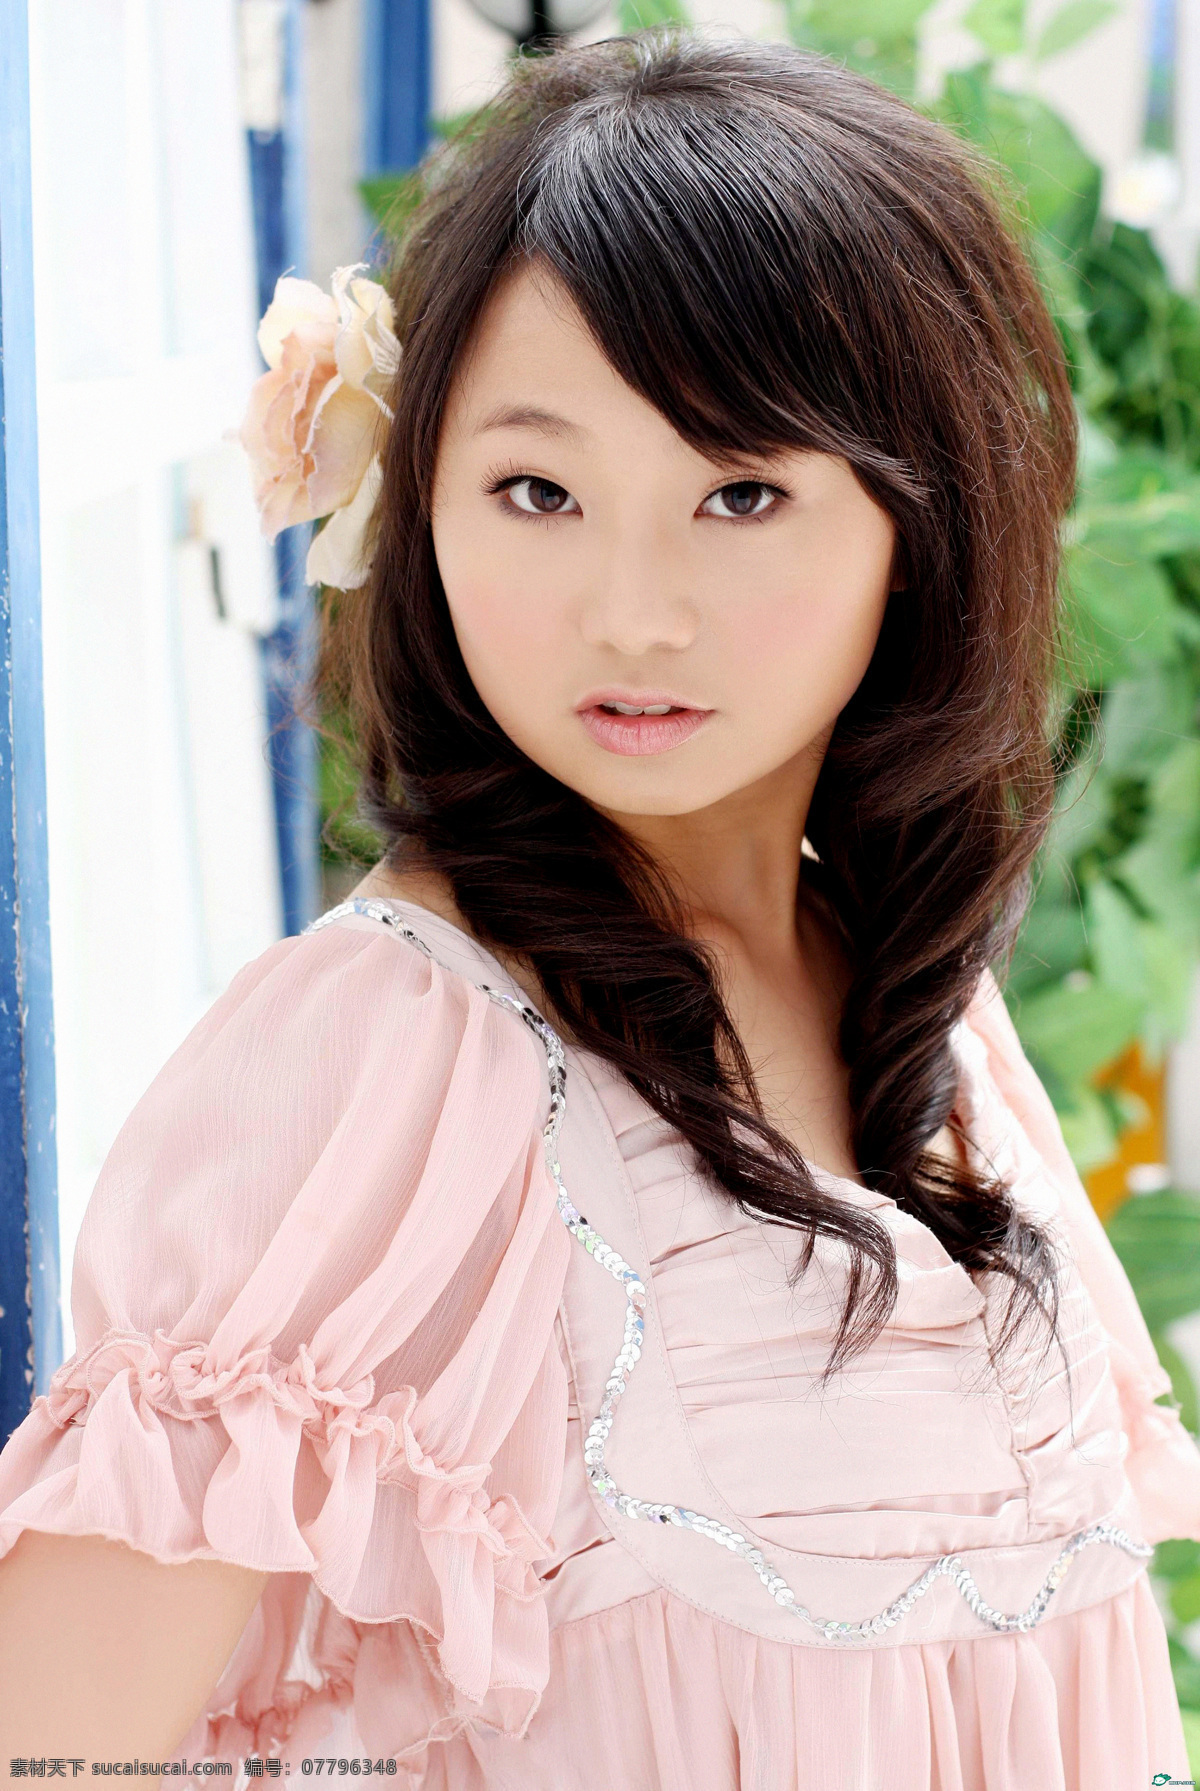 亚洲美女写真 日本 超人气 日本妹妹 邻家 时装 女孩 漂亮 美丽 公主 清纯 青春 甜美 可爱 气质 亚洲美女 写真集 人物摄影 人物图库